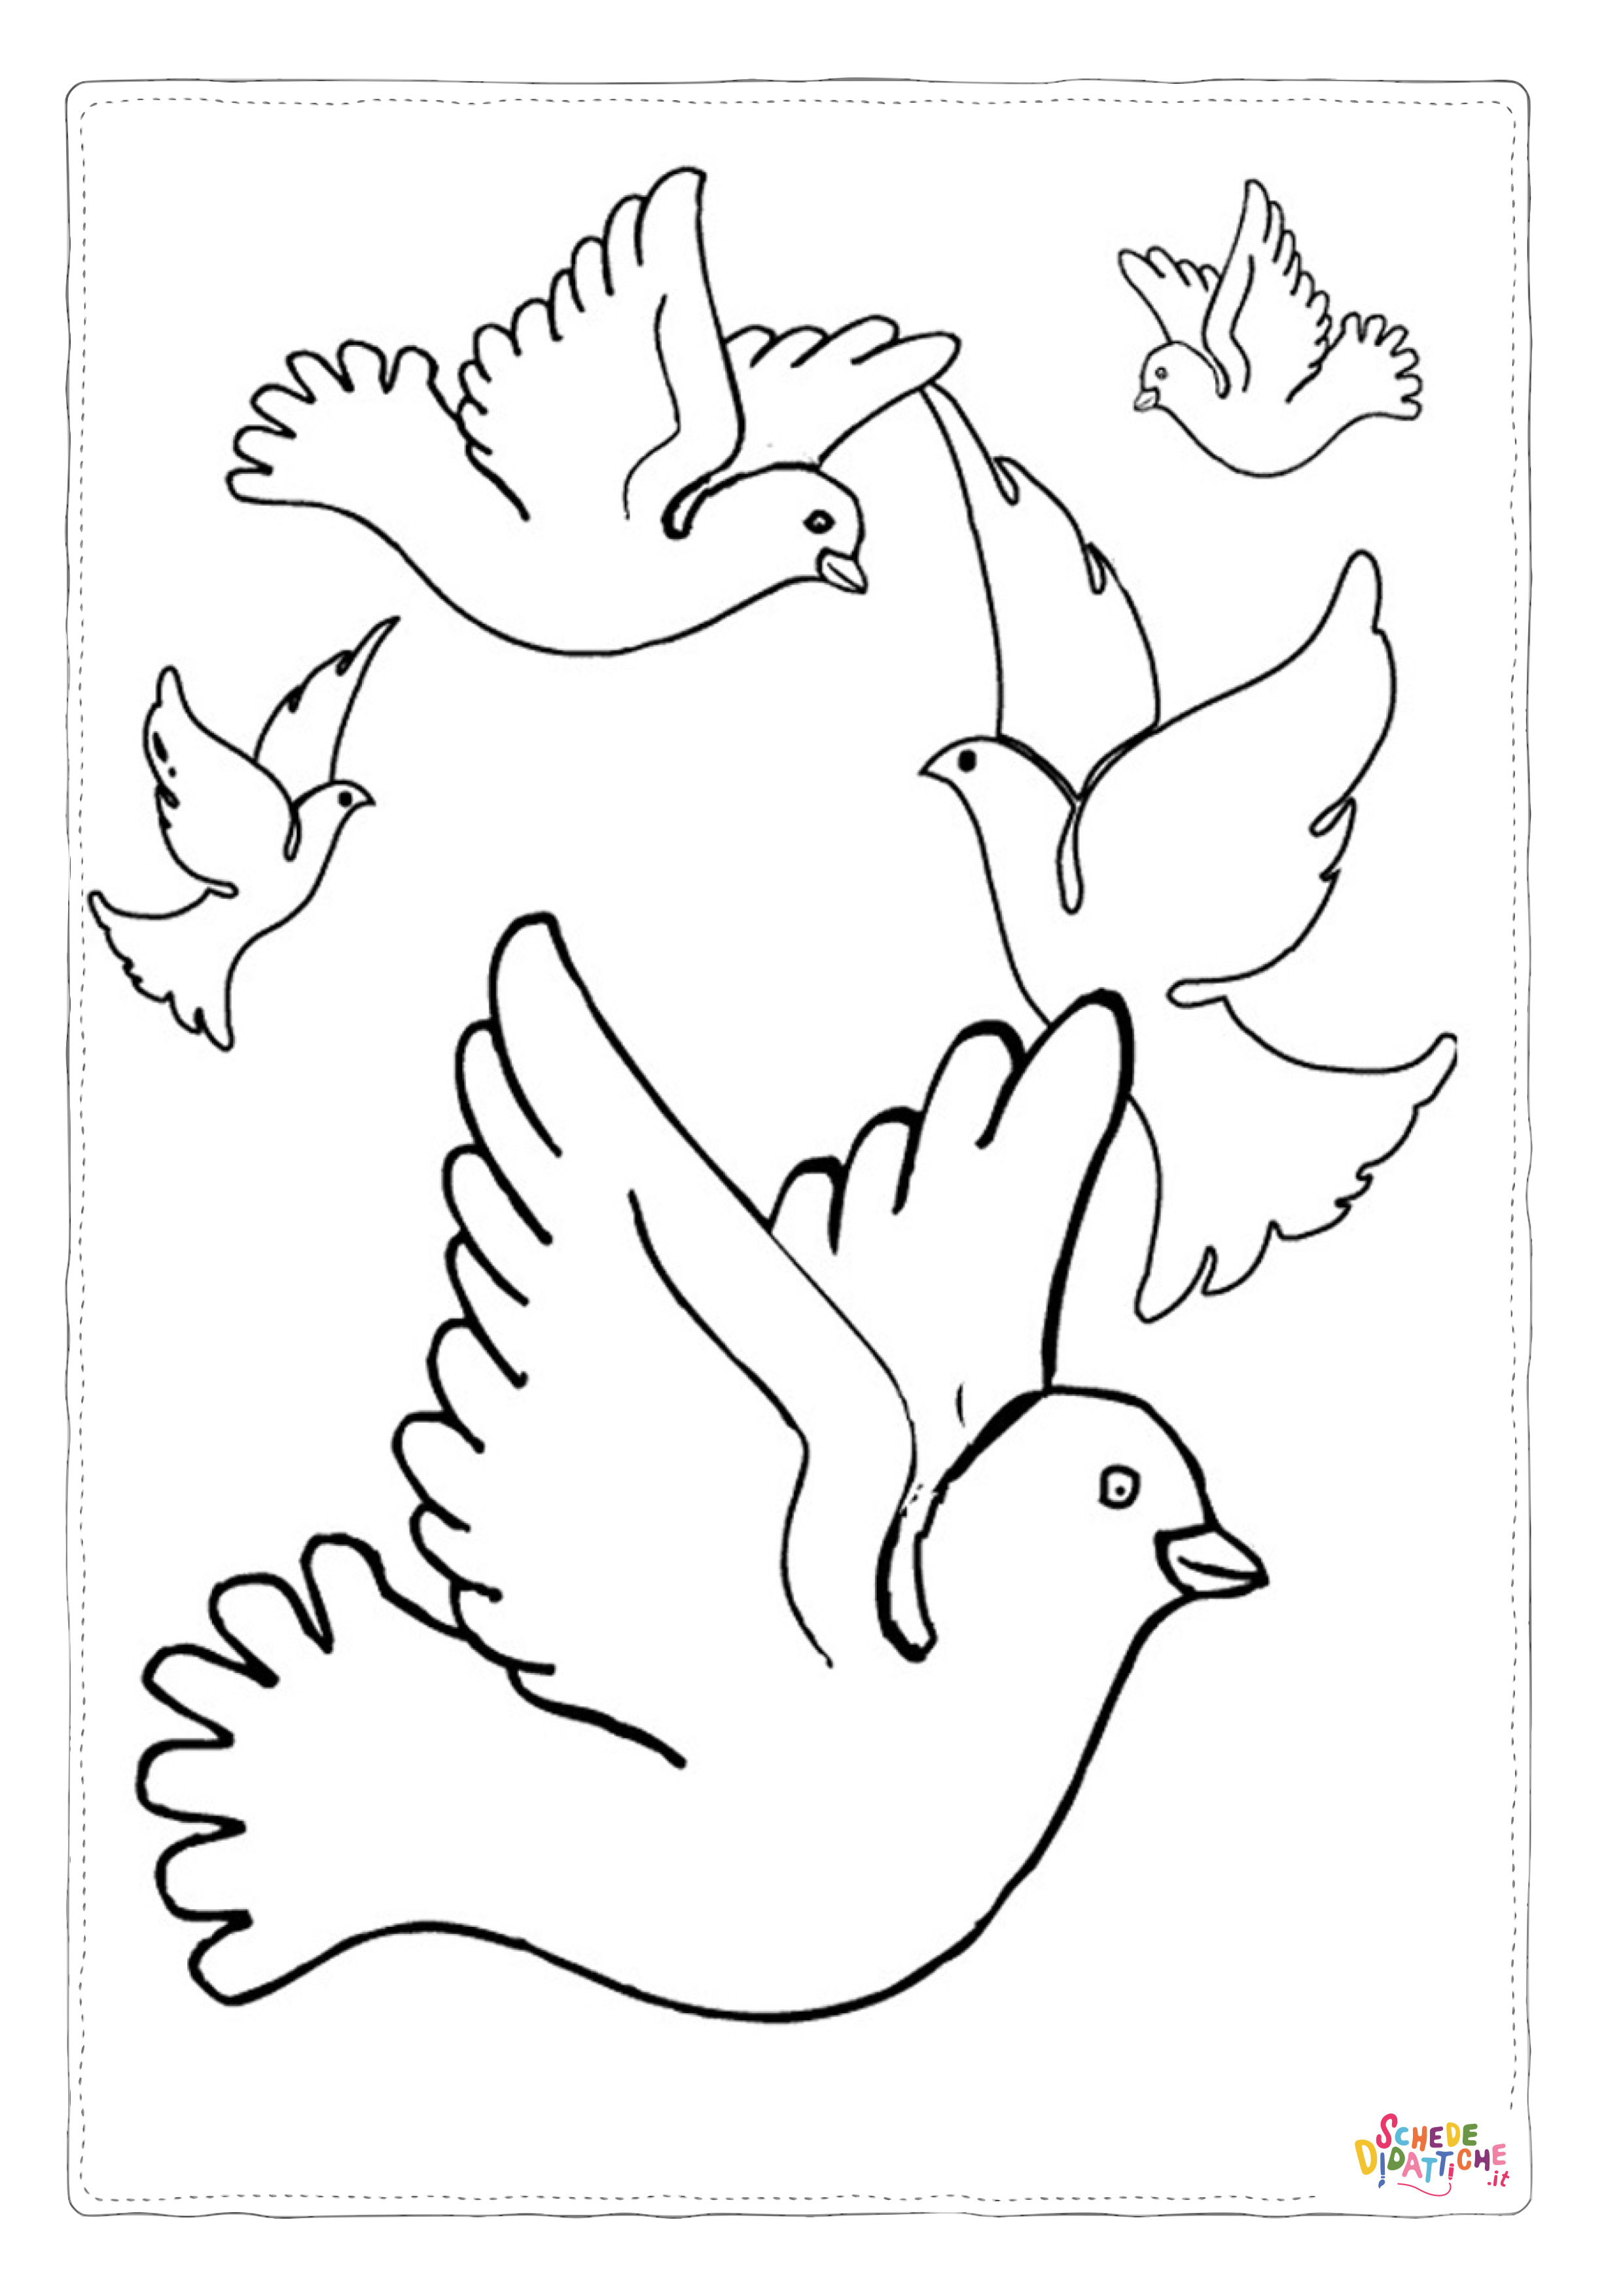 Disegno di colomba da stampare e colorare 18